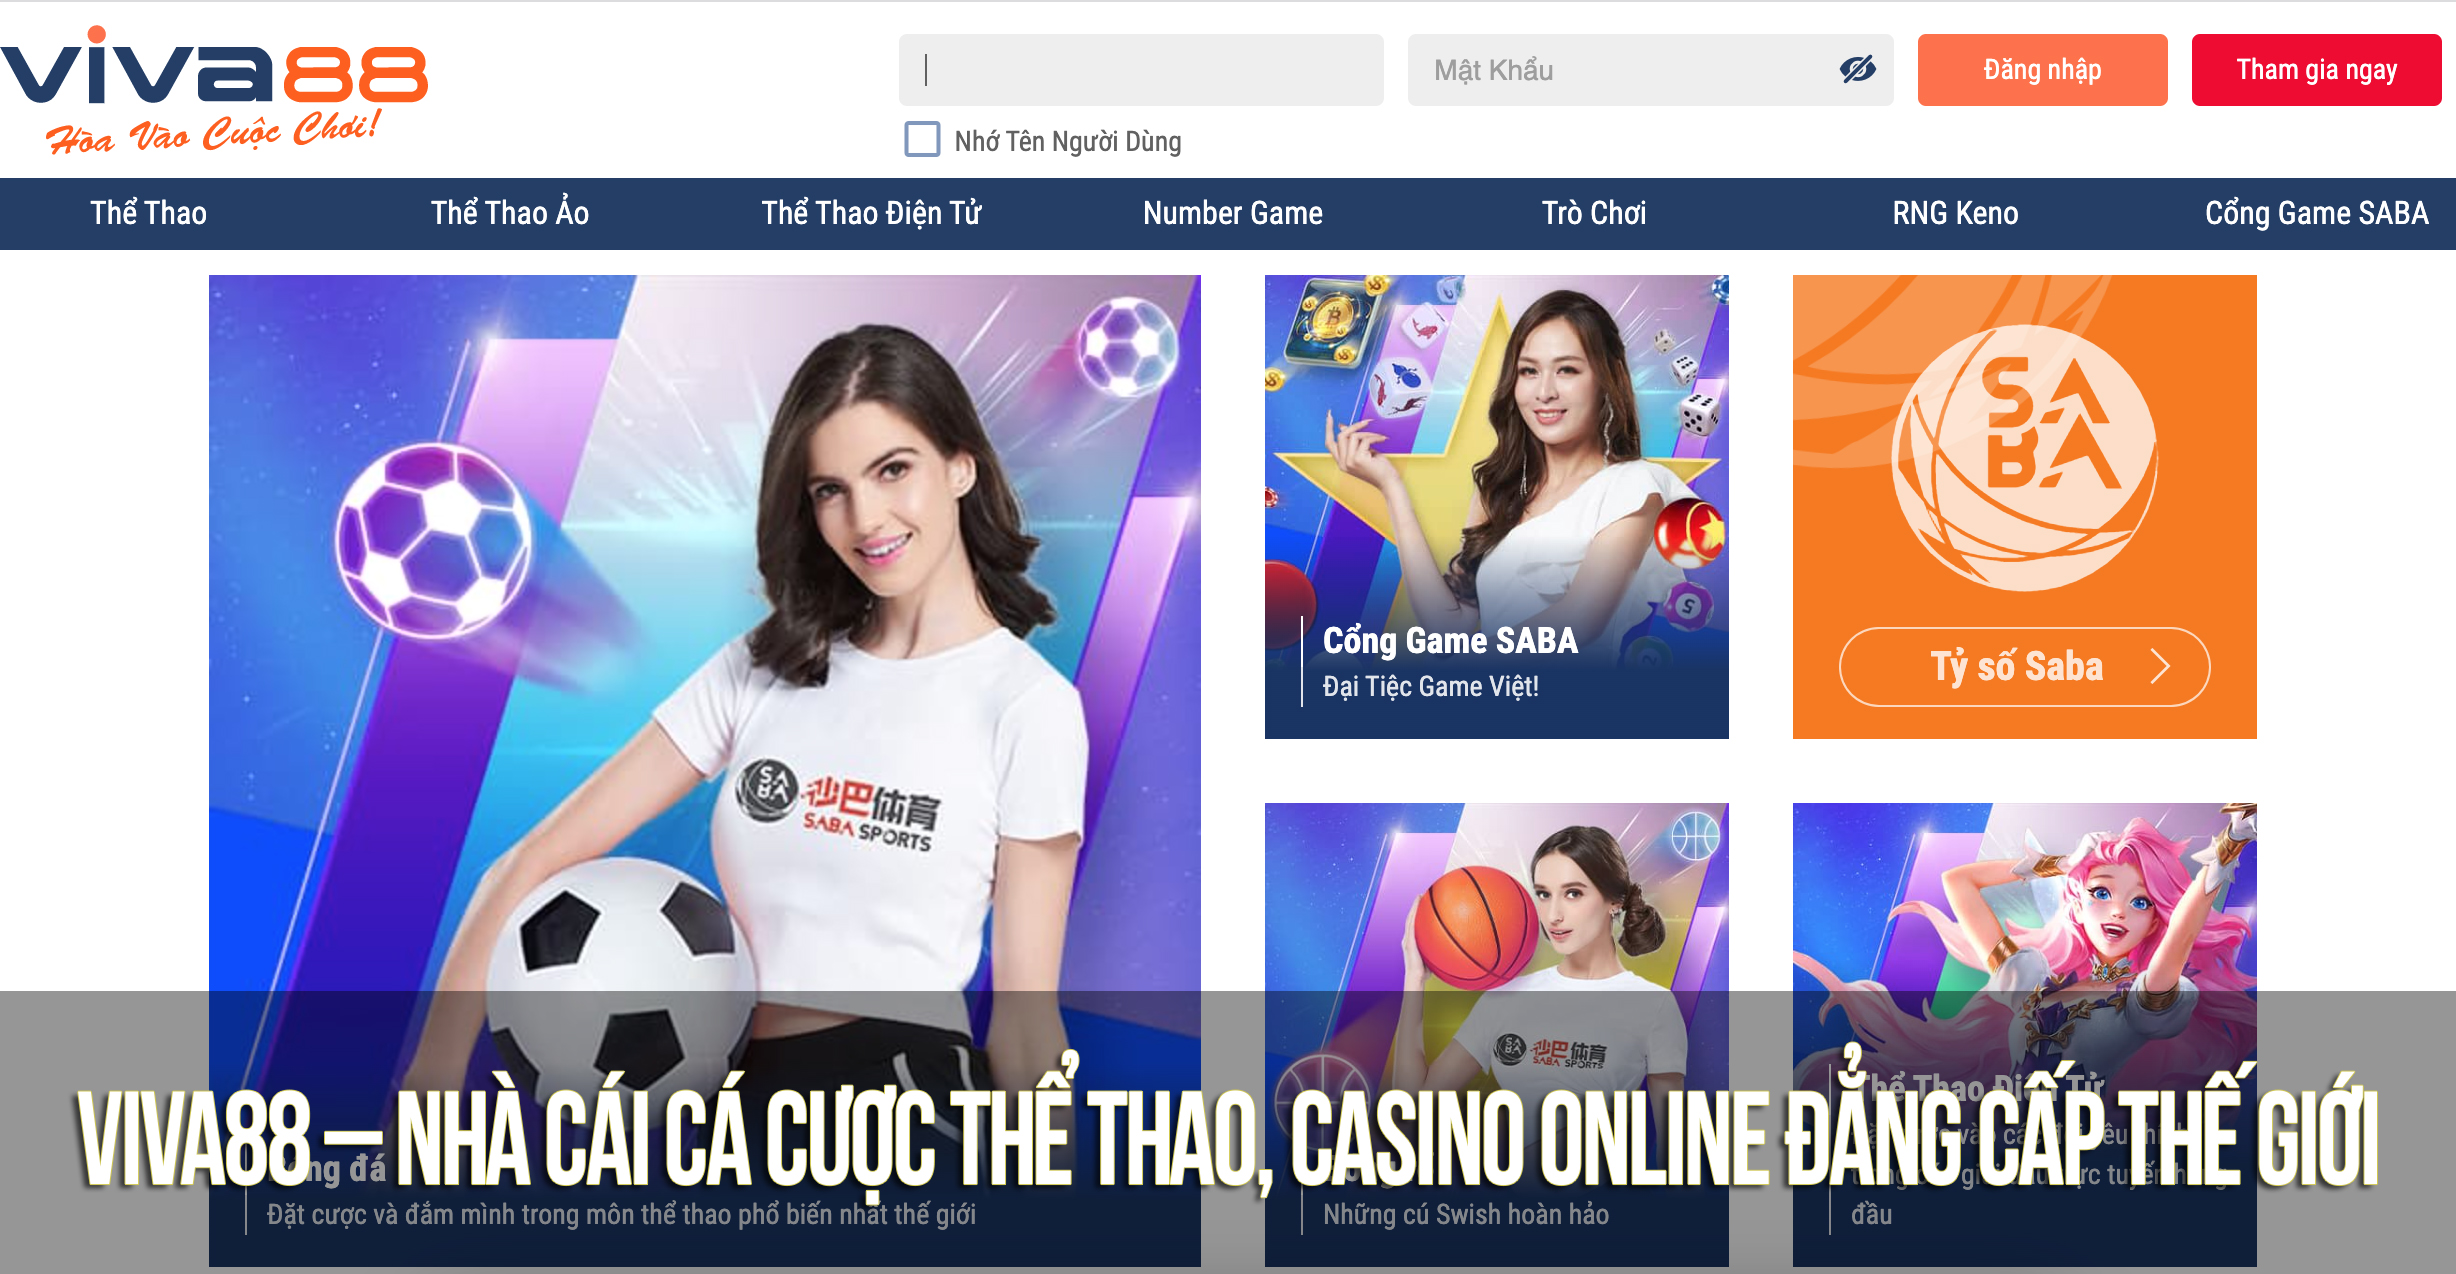 Viva88 – Nhà cái cá cược thể thao, casino online đẳng cấp thế giới